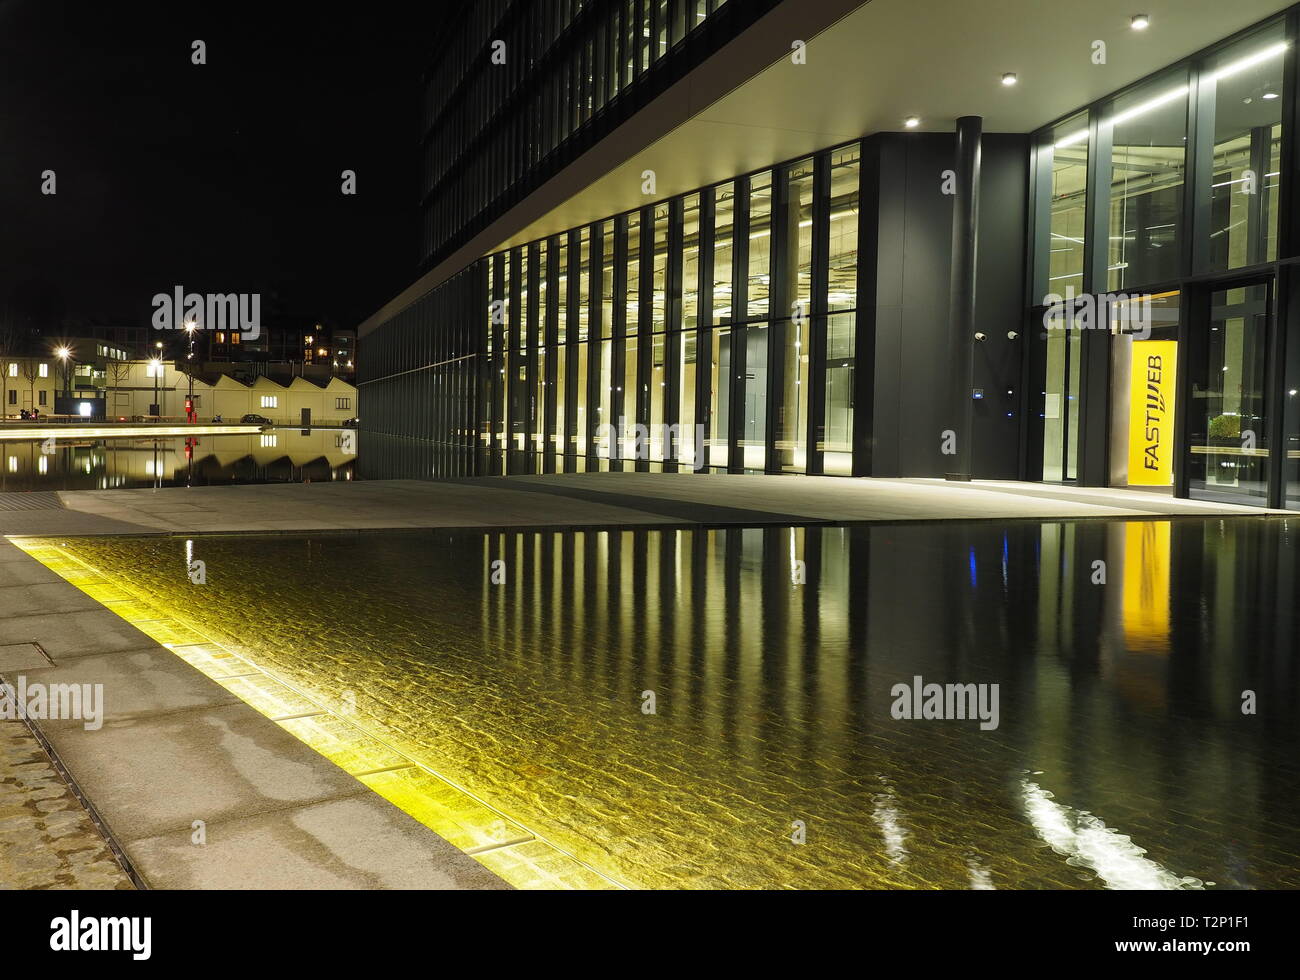 Milano, Italia: 12 Febbraio 2019: architettura moderna nella nuova piazza Adriano Olivetti nel sud della città, inaugurata il 27 settembre Foto Stock